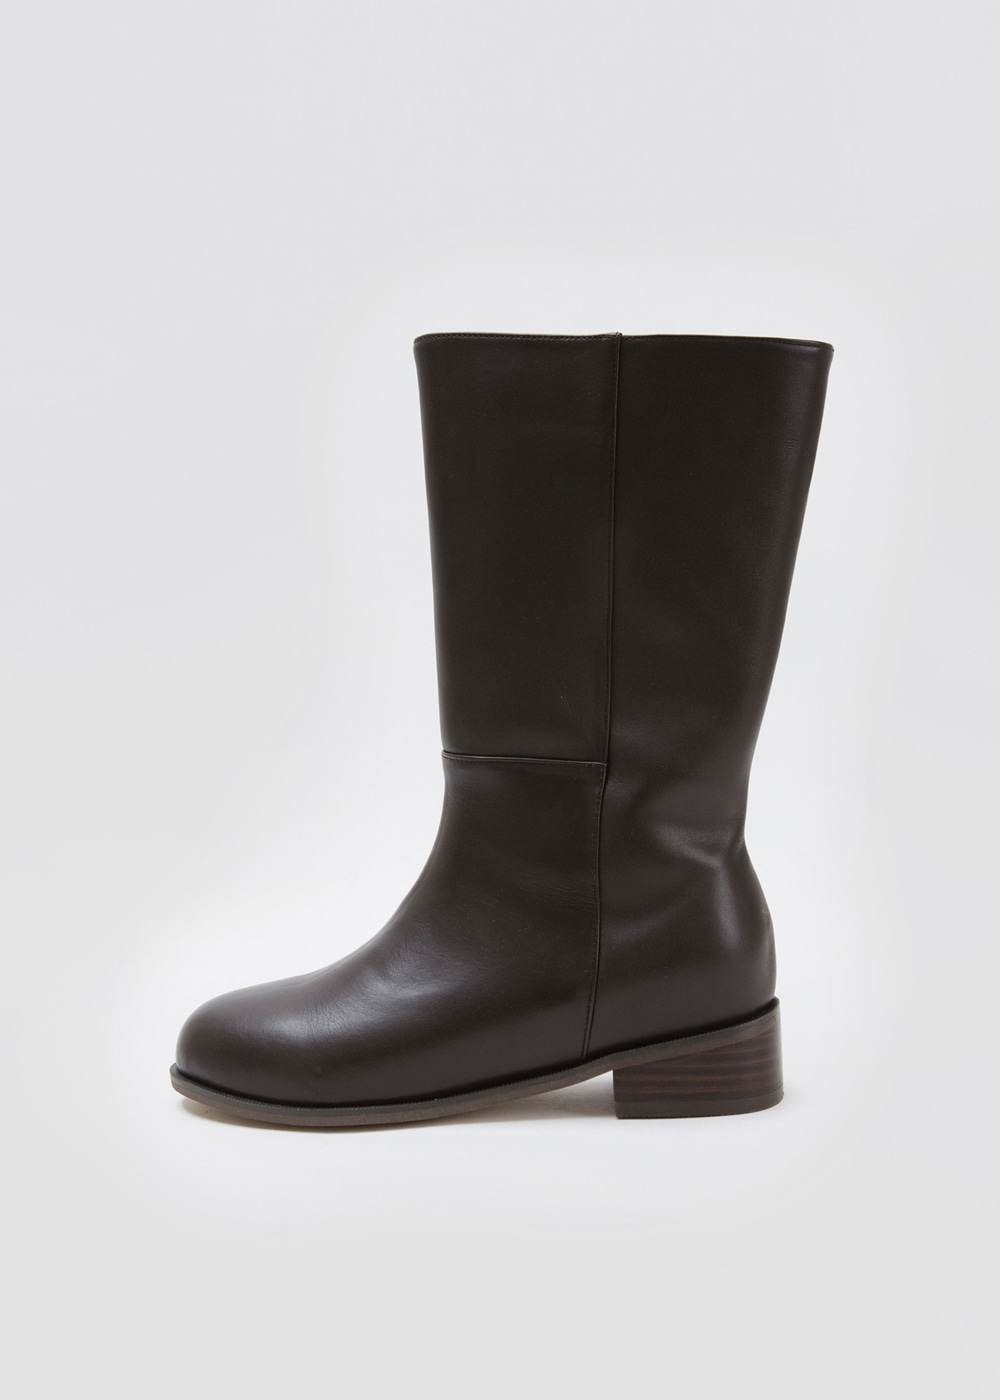 블루브릭,Round midi boots (brown)